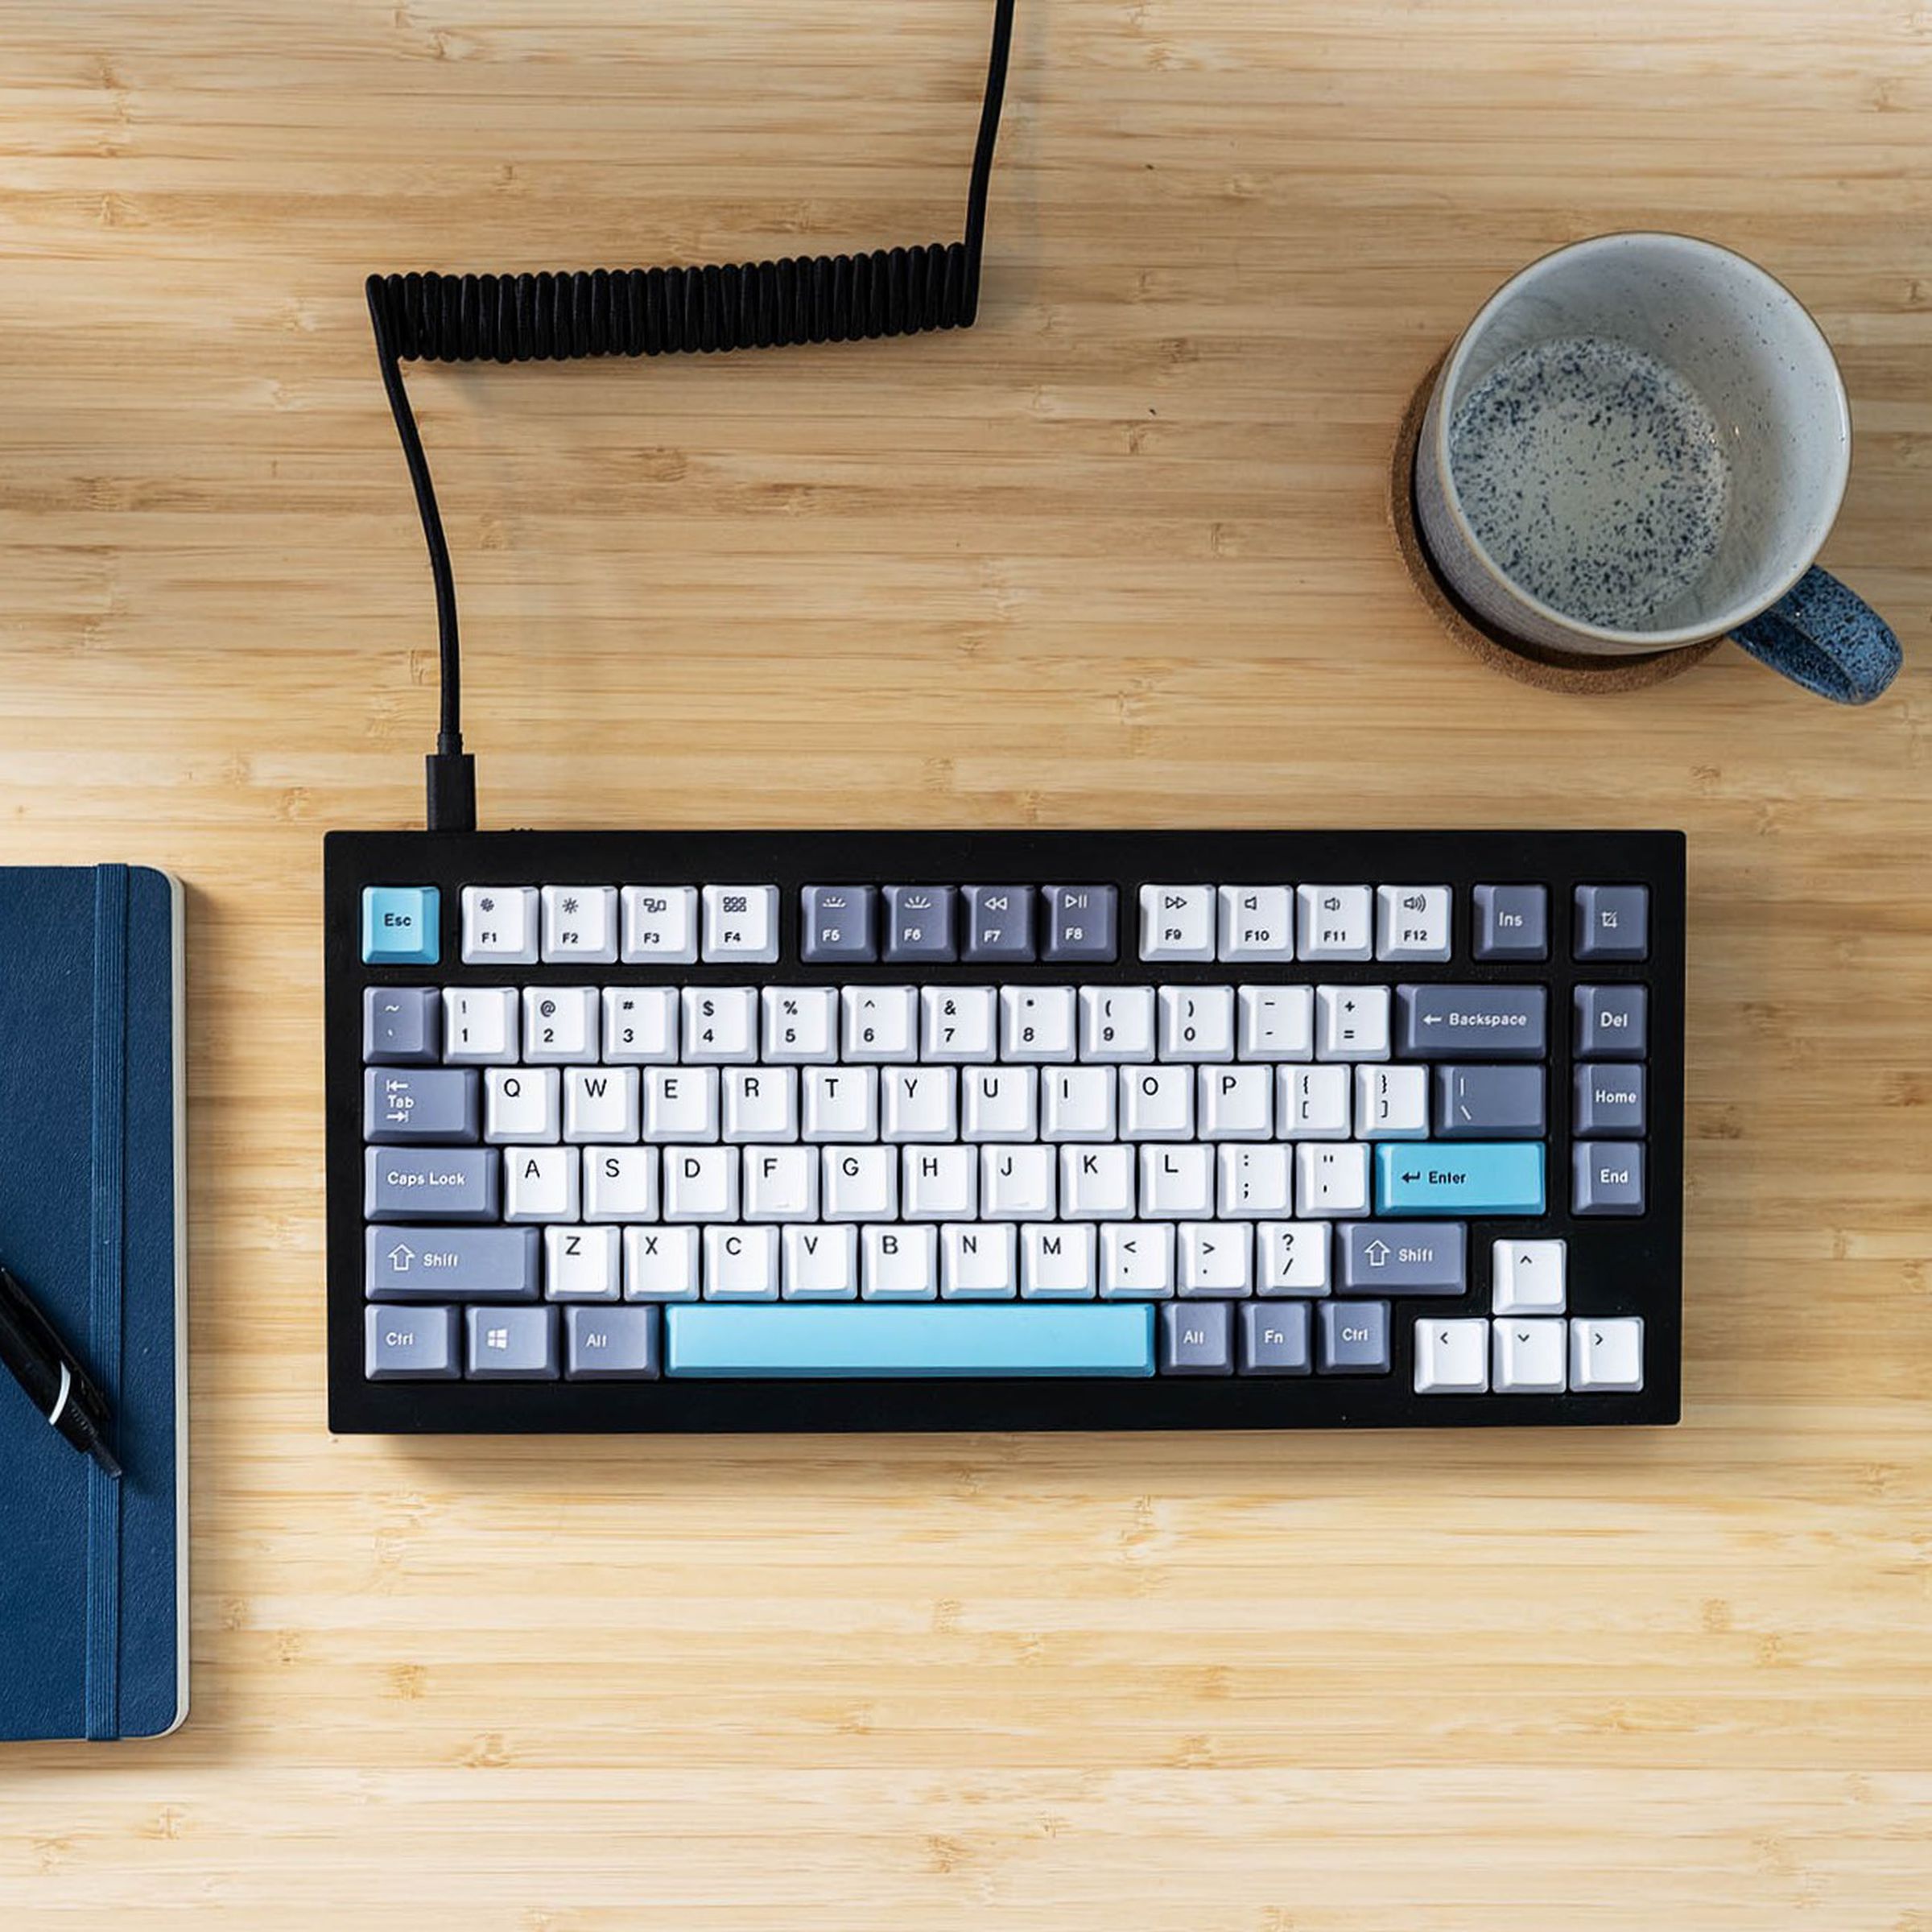 Keychron Q1 keyboard on a desk.